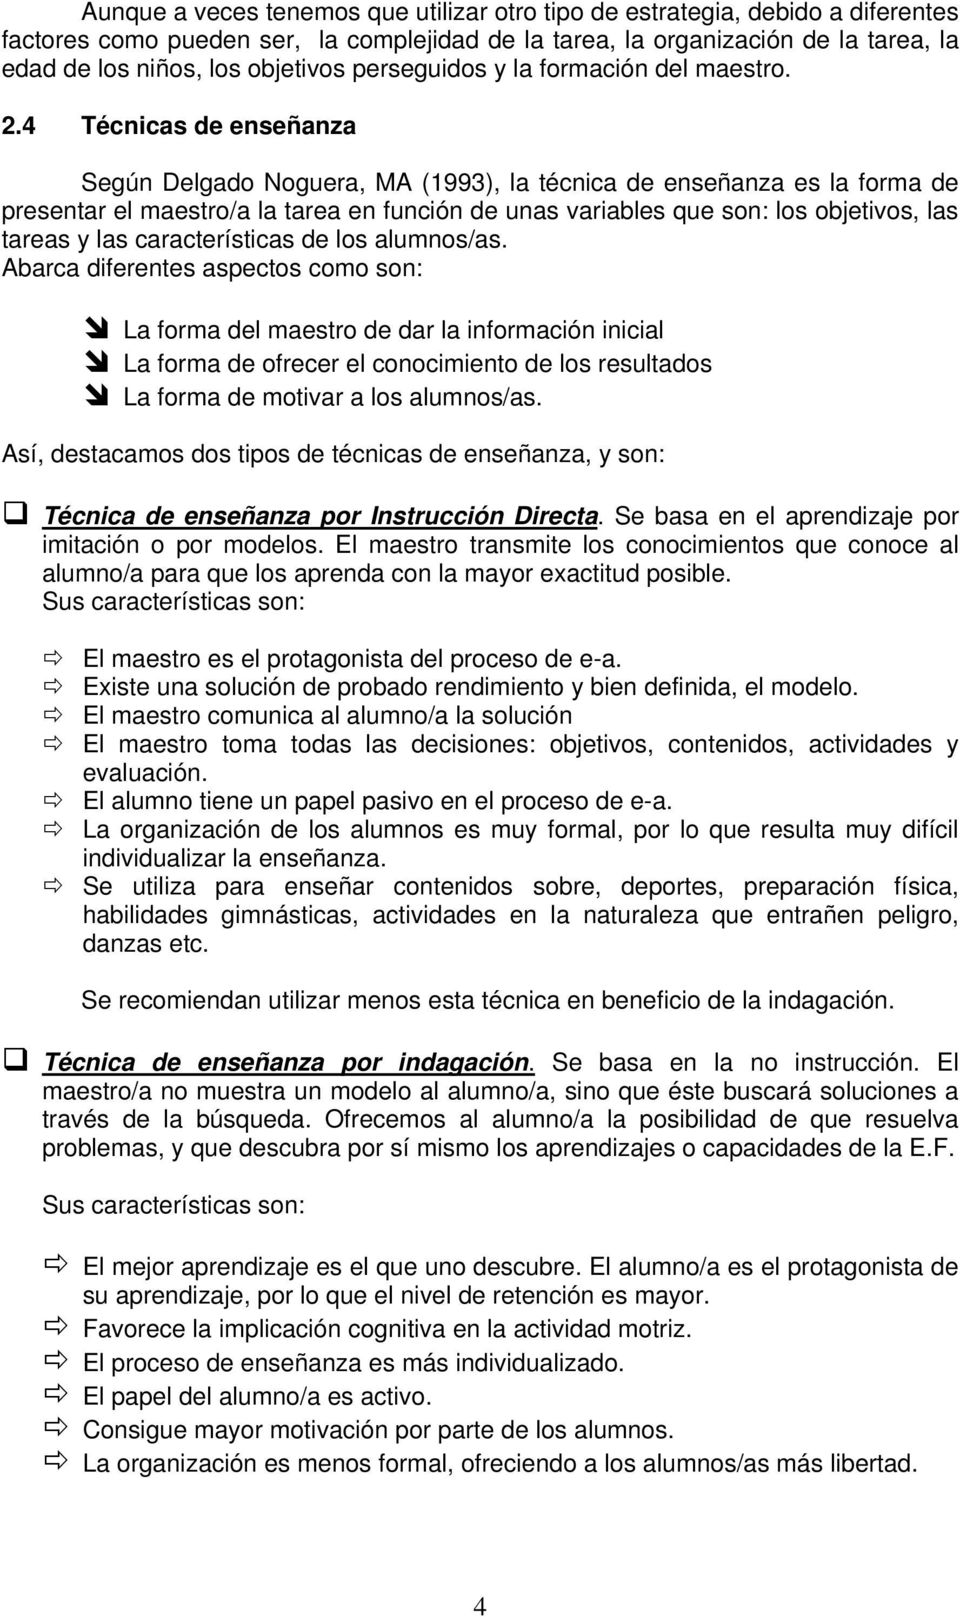 4 Técnicas de enseñanza Según Delgado Noguera, MA (1993), la técnica de enseñanza es la forma de presentar el maestro/a la tarea en función de unas variables que son: los objetivos, las tareas y las